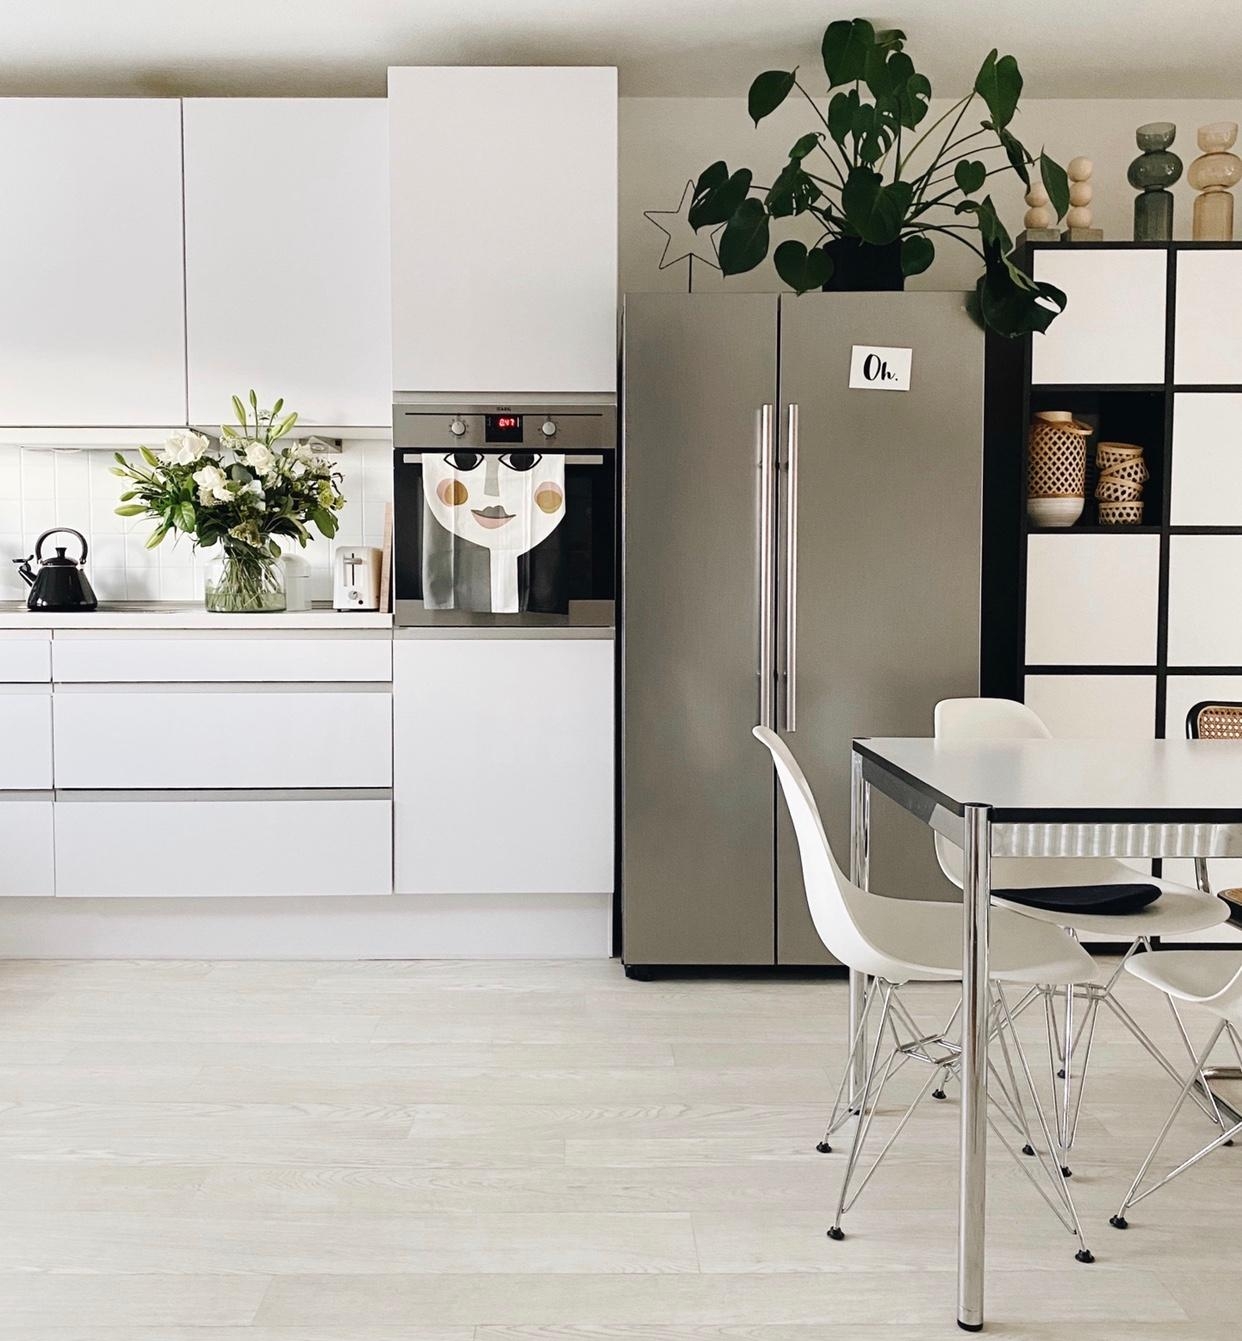 White Küchen Vibes🌿🌾
#küche #kücheninspiration #whiteliving #küchendeko #blumendeko #monstera #interior